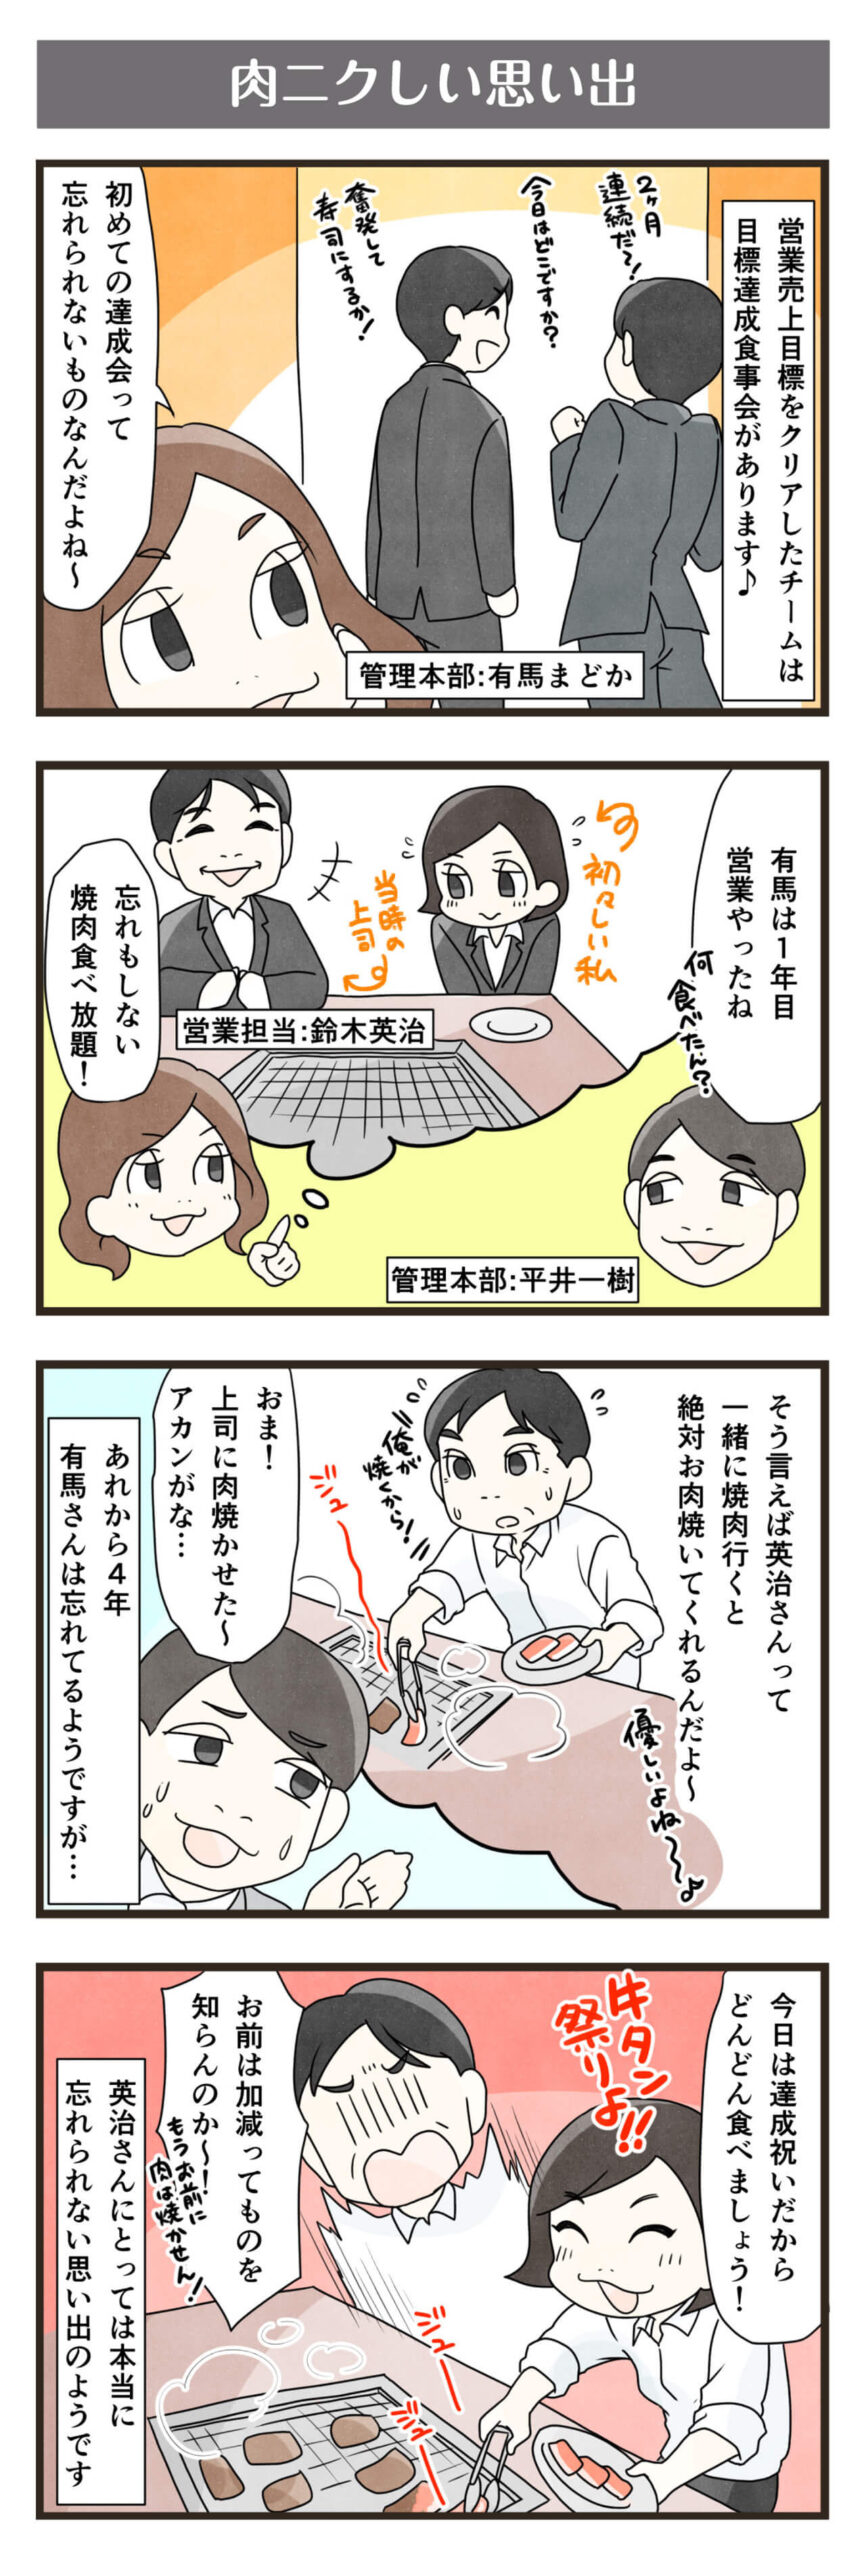 横浜スタイル4コマ漫画12月分